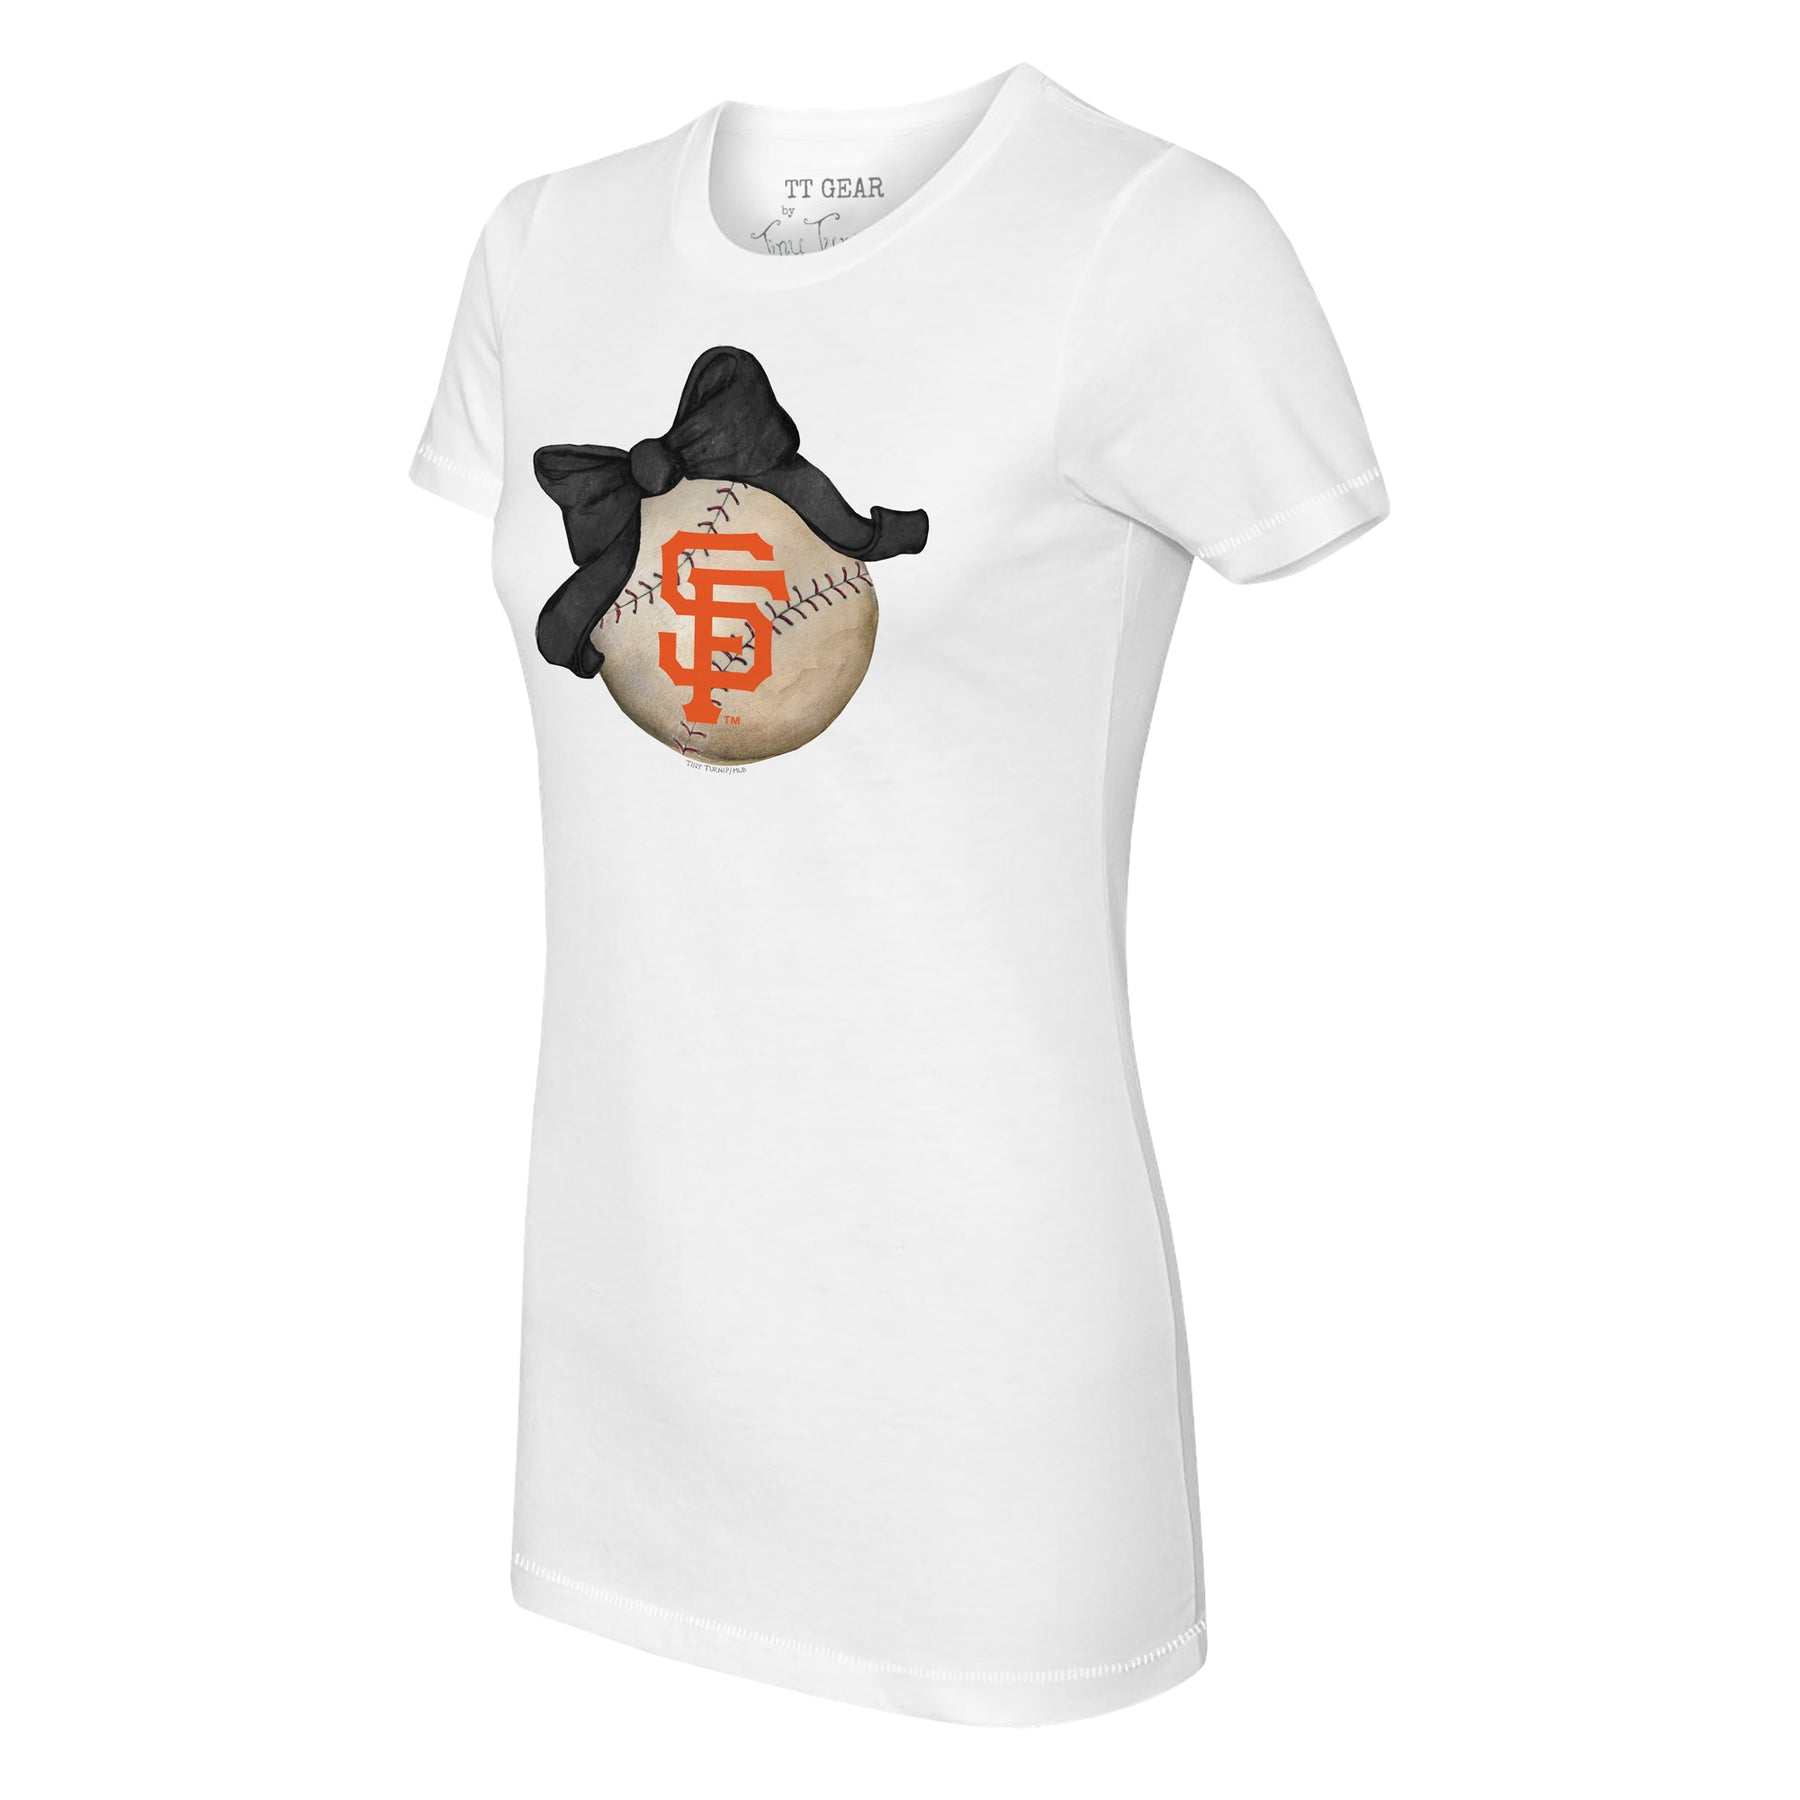 San Francisco Giants Slugger Tee Shirt Youth Large (10-12) / White